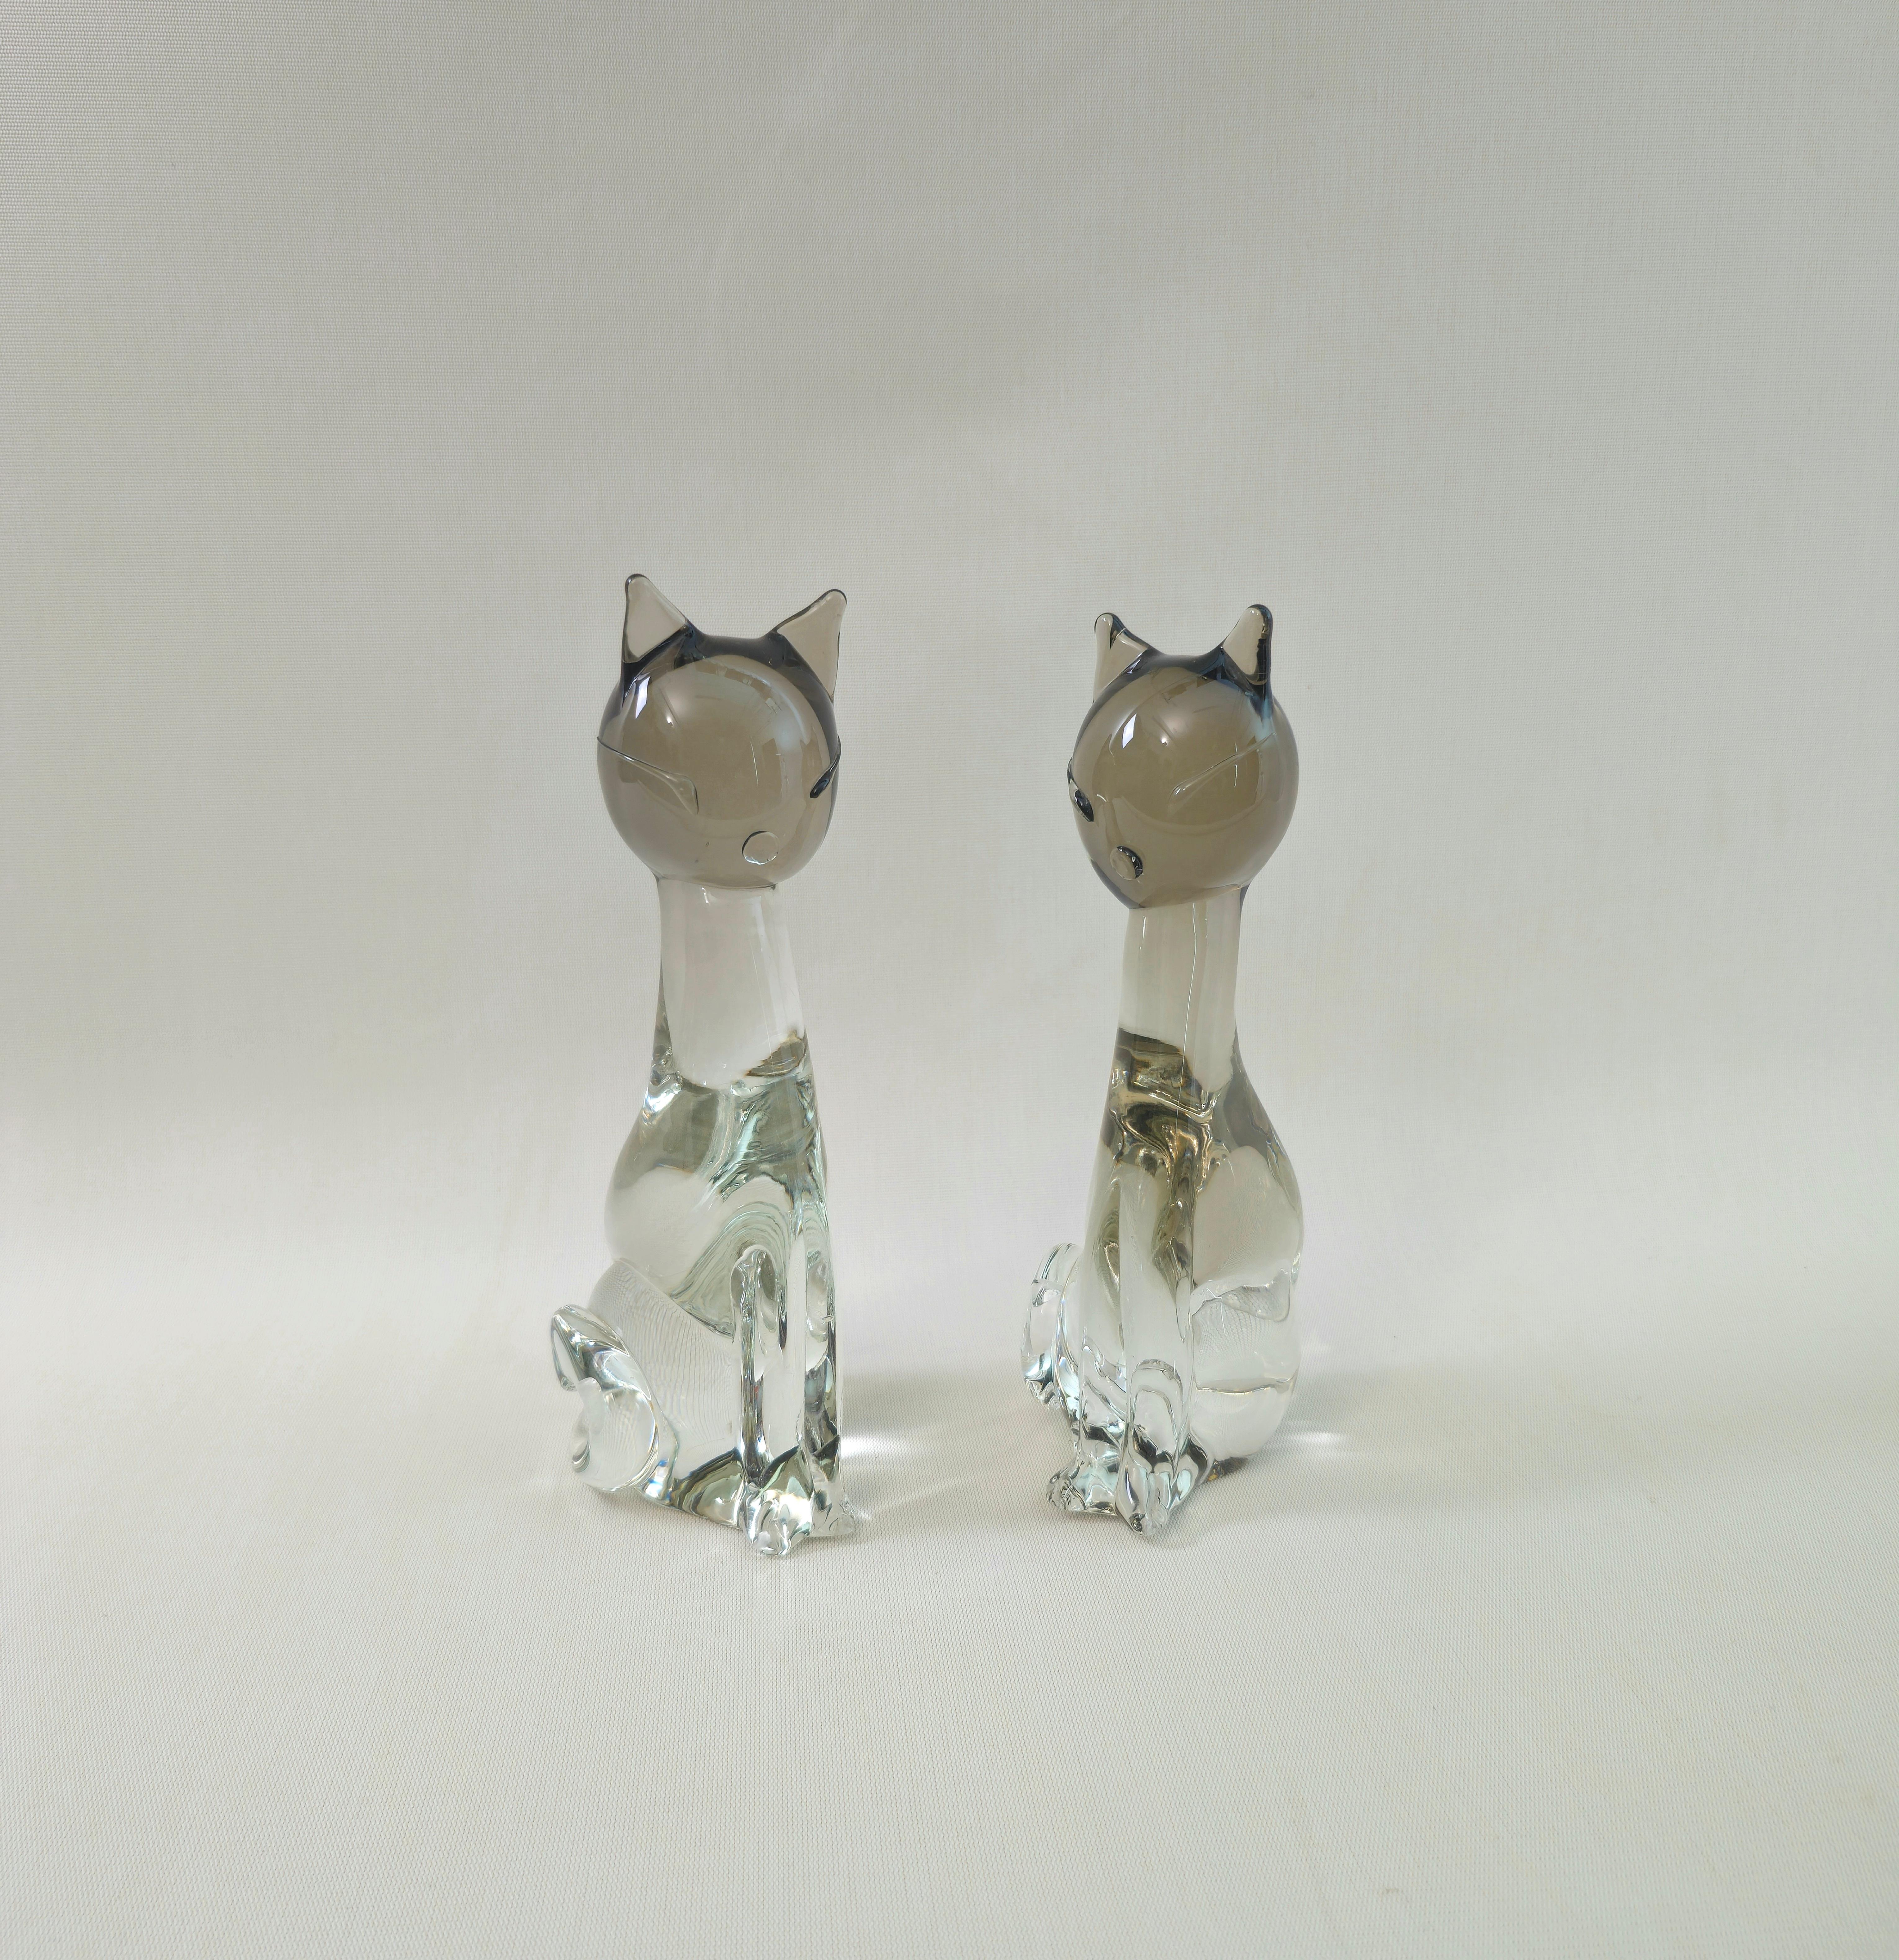 Satz von 2 skulpturalen Katzen/Dekorationsobjekten Produziert in Italien in den 70er Jahren von Licio Zanetti. Geprägte Signatur auf der Unterseite des Sockels.
Jede einzelne Katze wurde aus zweifarbigem Murano-Glas hergestellt, wobei der obere Teil